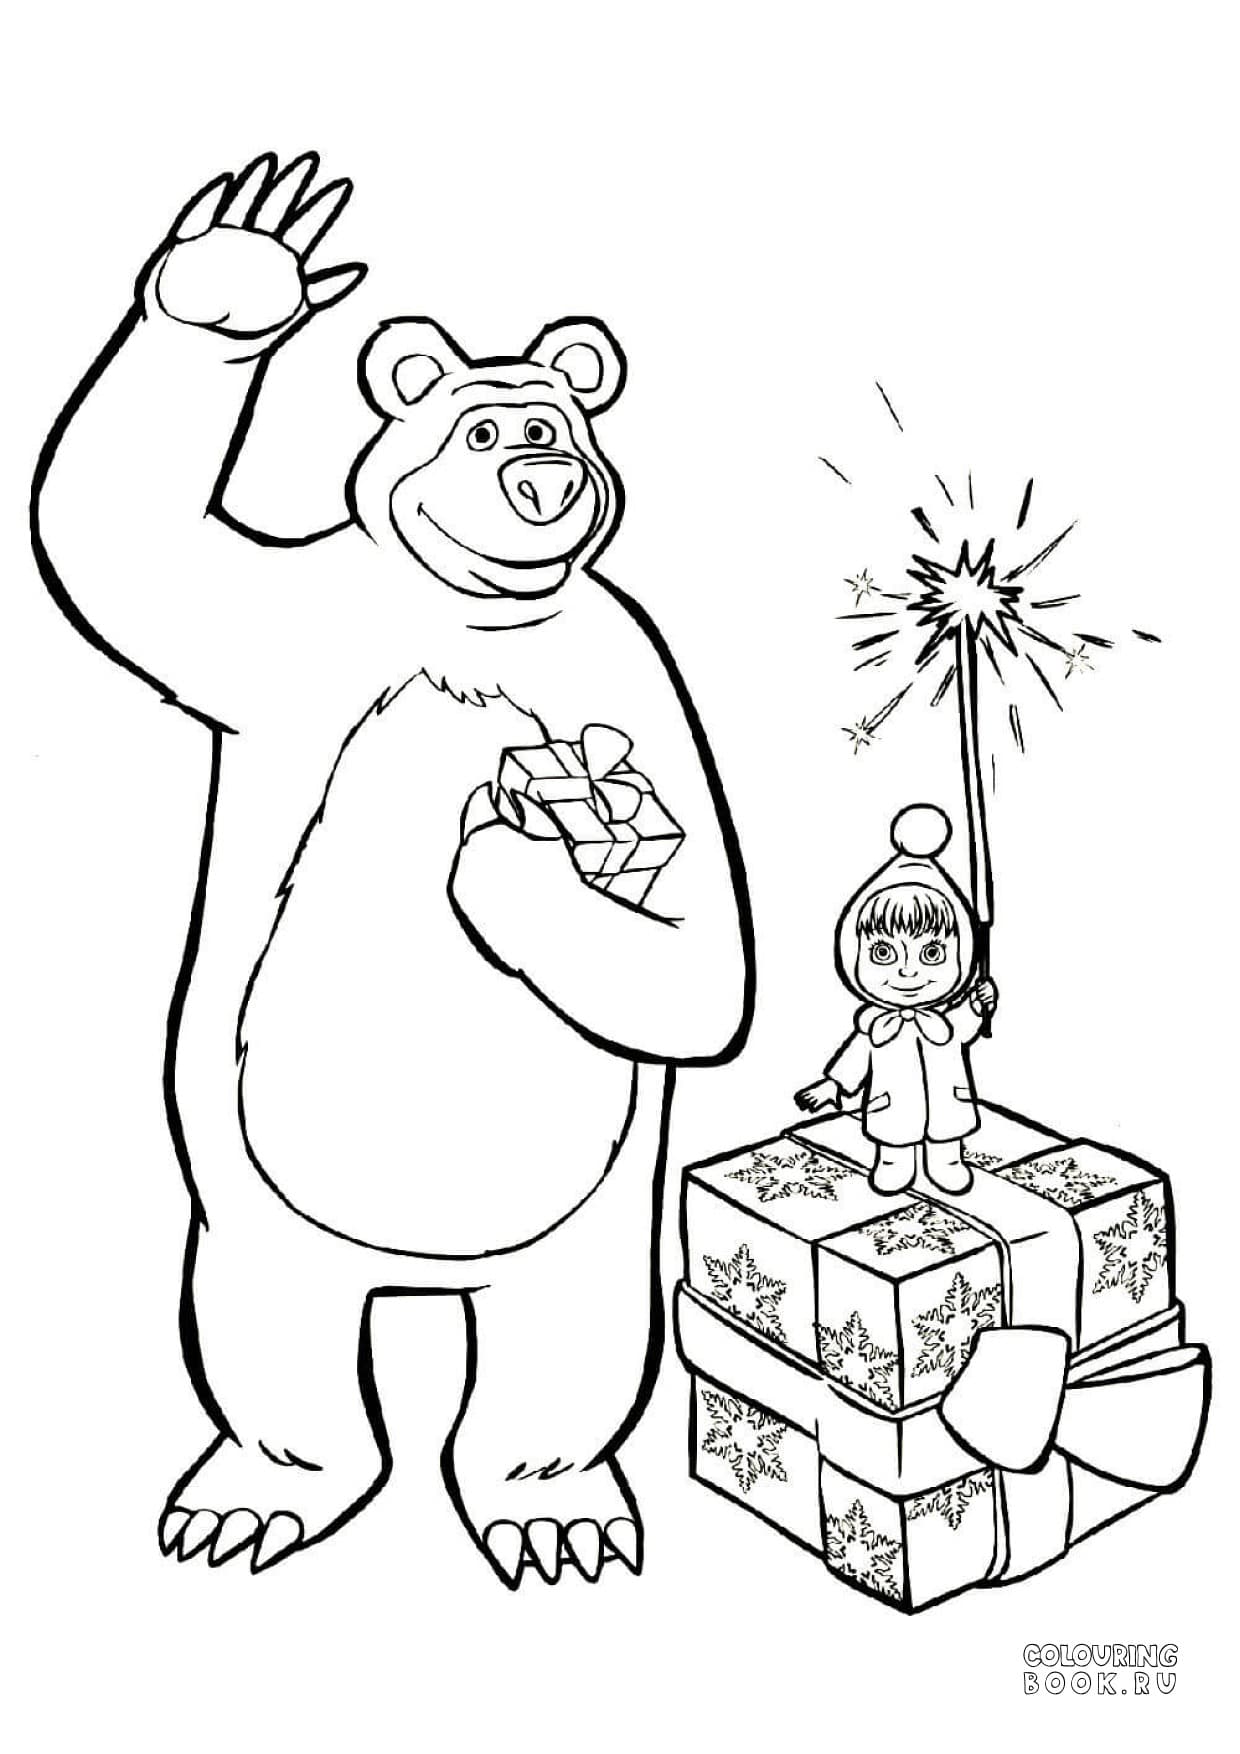 Раскраски Маша и Медведь распечатать и скачать бесплатно, картинки для раскрашивания